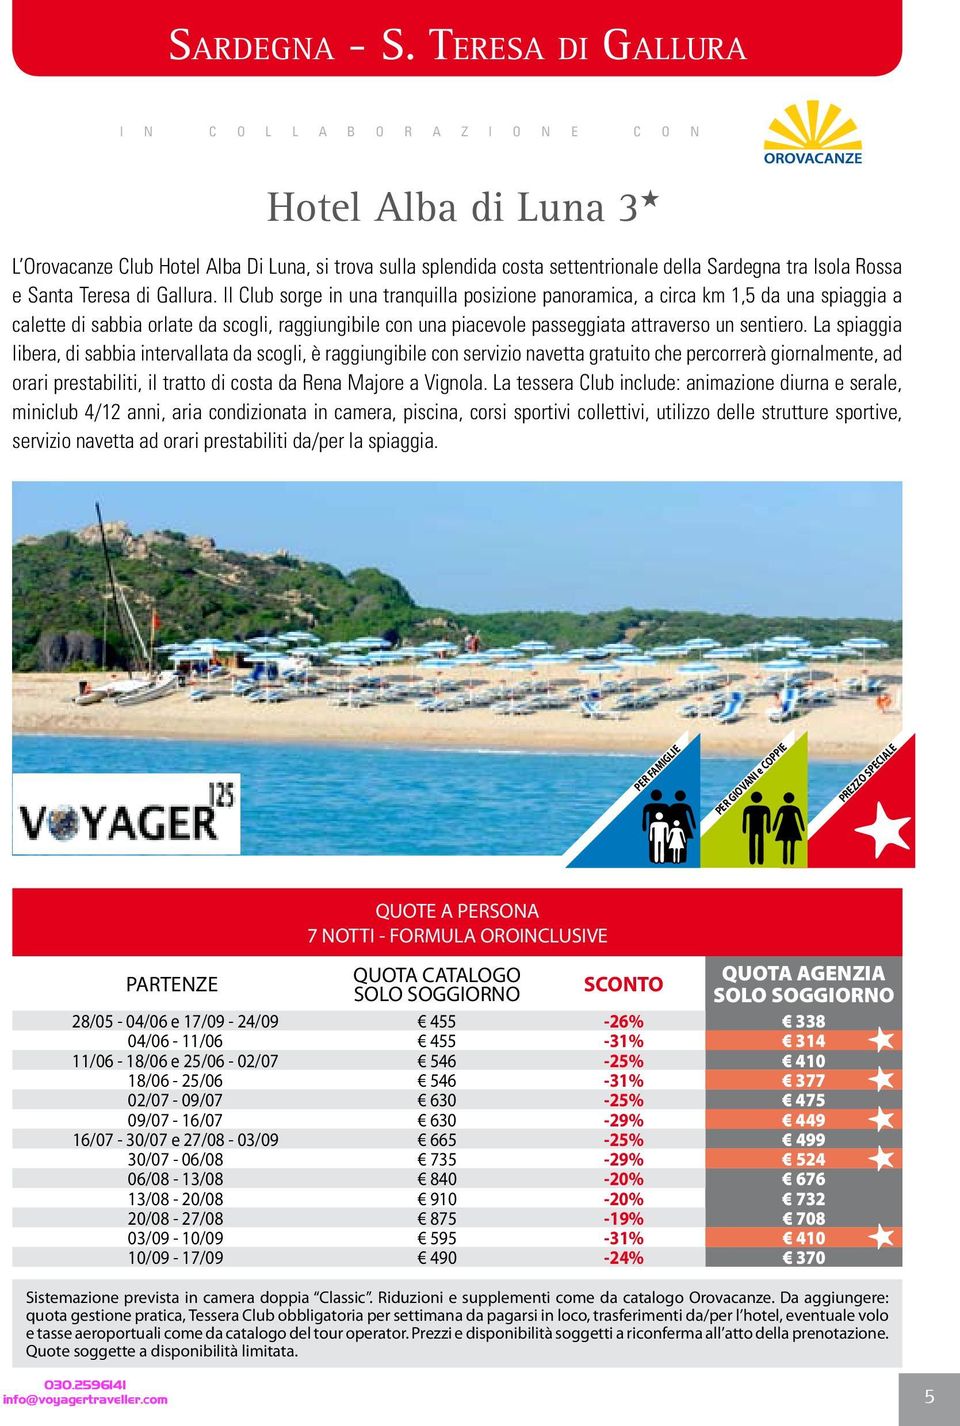 La spiaggia libera, di sabbia intervallata da scogli, è raggiungibile con servizio navetta gratuito che percorrerà giornalmente, ad orari prestabiliti, il tratto di costa da Rena Majore a Vignola.